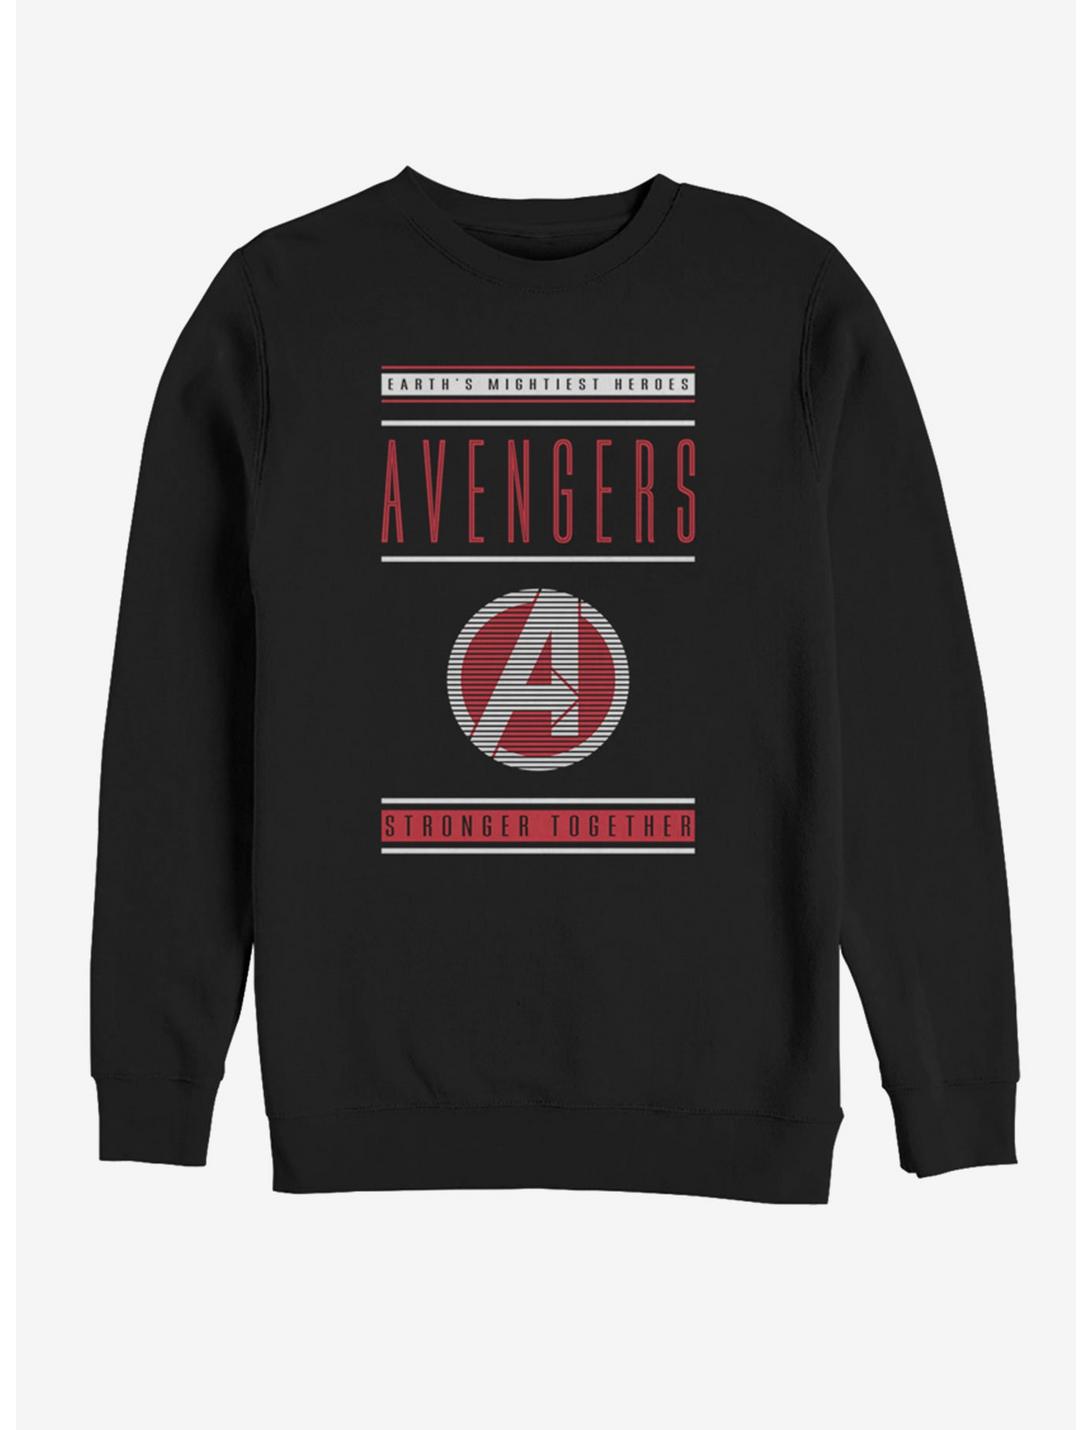 Marvel Avengers: Endgame Stronger Together Sweatshirt, BLACK, hi-res